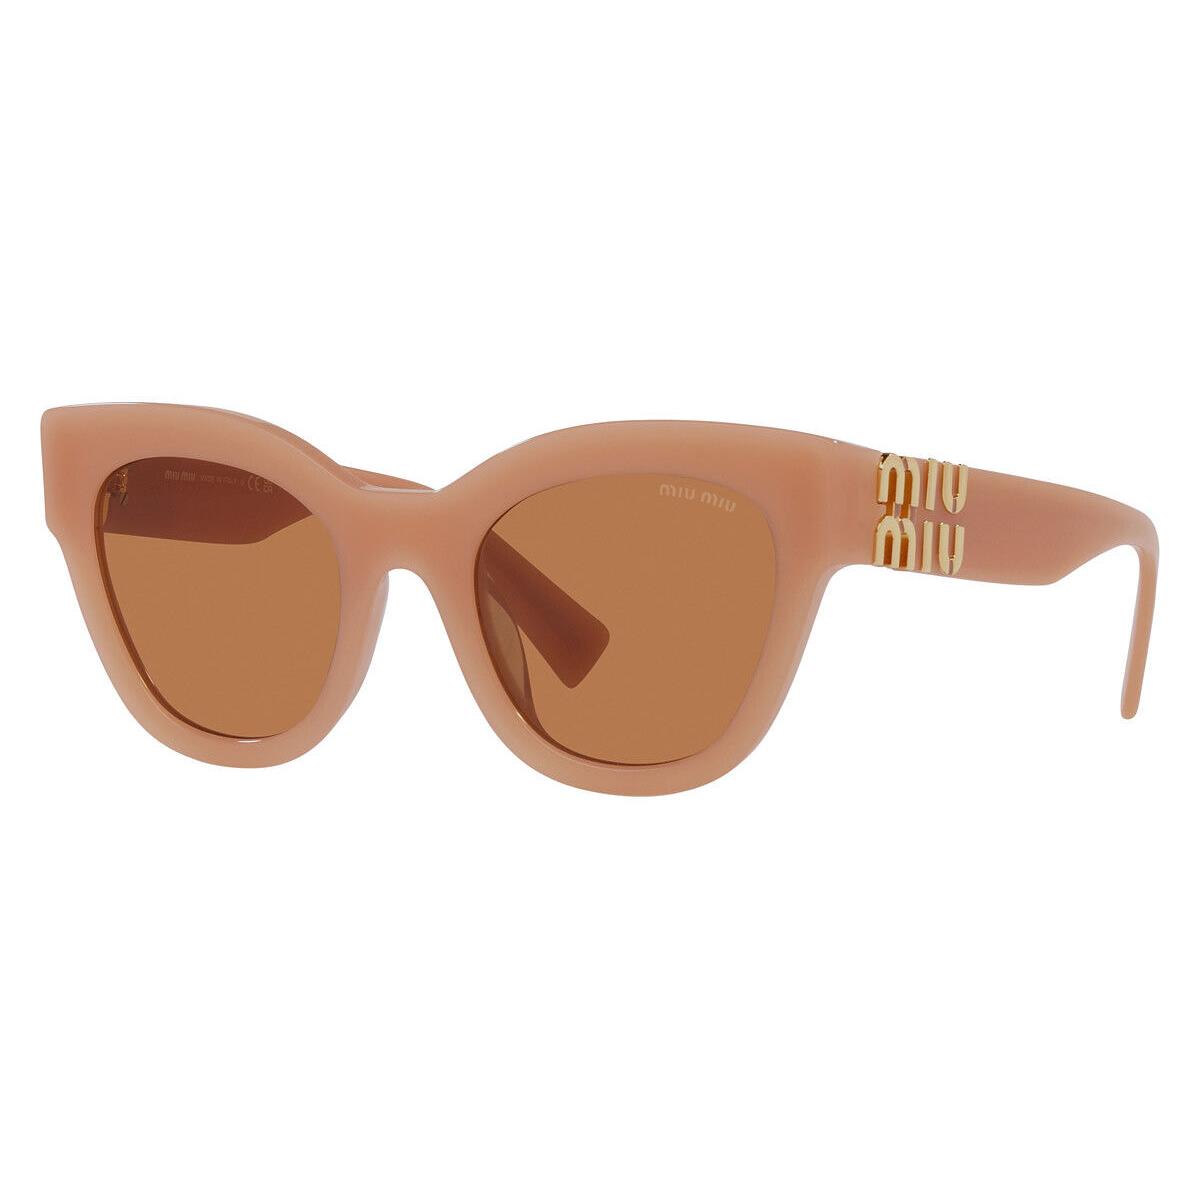 Miu Miu MU 01YSF Sunglasses Women Caramel Brown Square 51mm